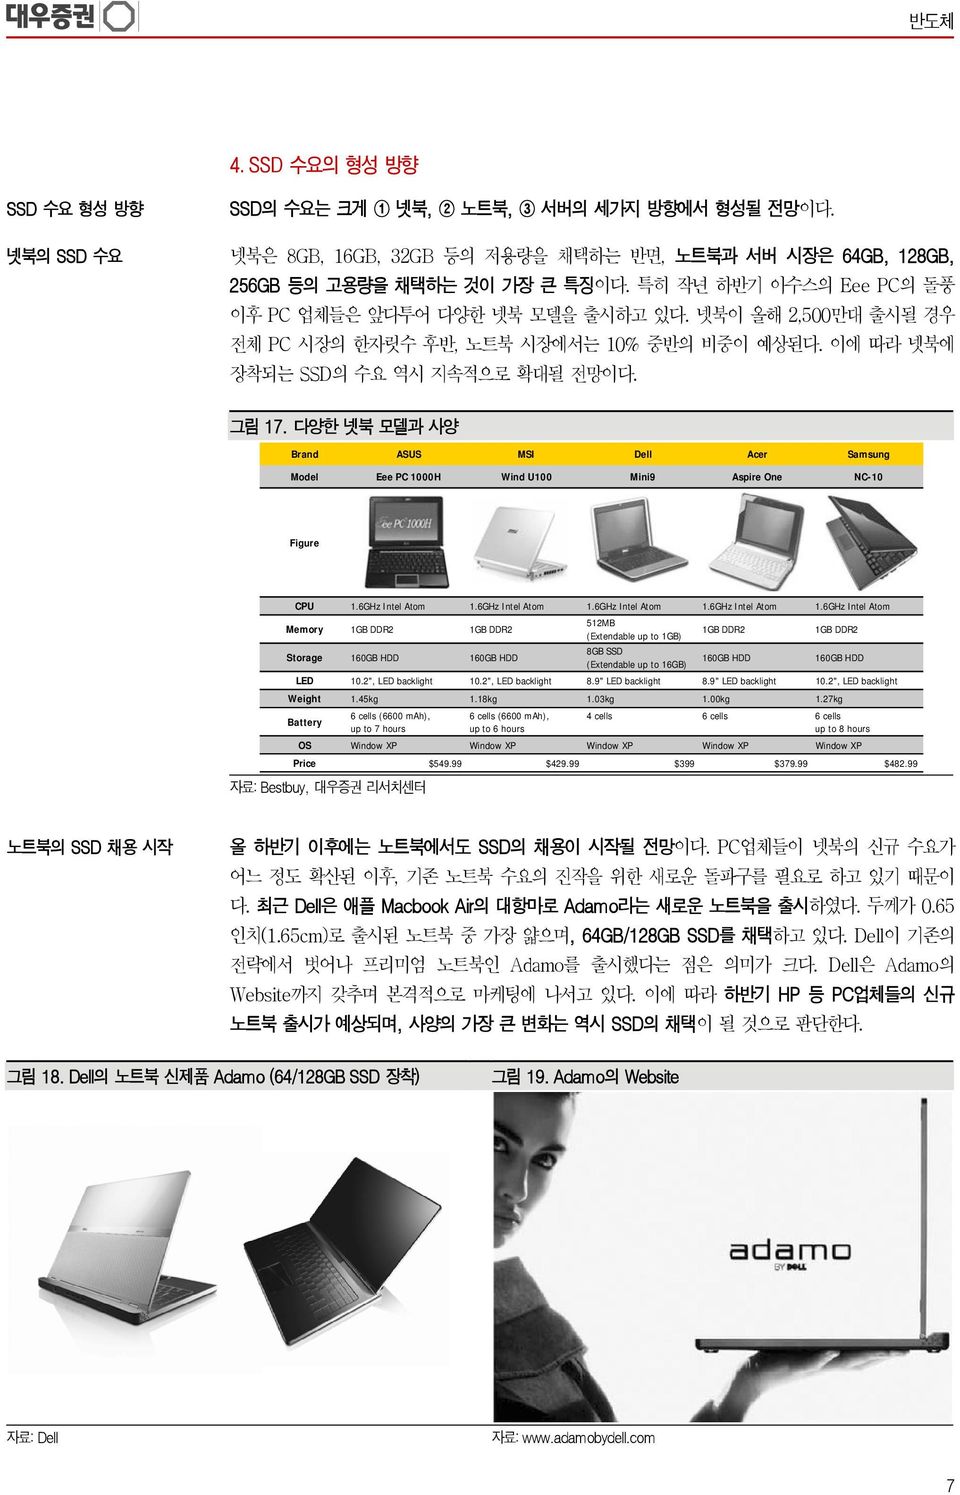 다양한 넷북 모델과 사양 Brand ASUS MSI Dell Acer Samsung Model Eee PC 1H Wind U1 Mini9 Aspire One NC-1 Figure CPU 1.6GHz Intel Atom 1.